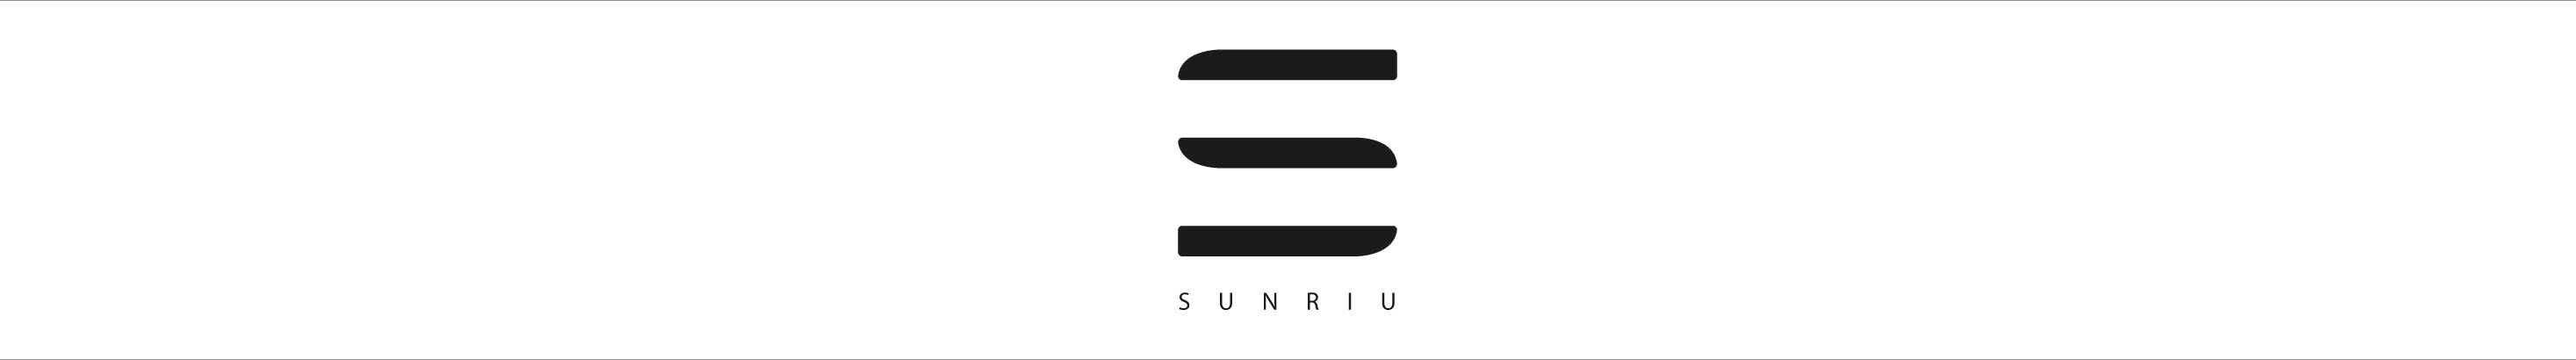 SUNRIU Design's profile banner